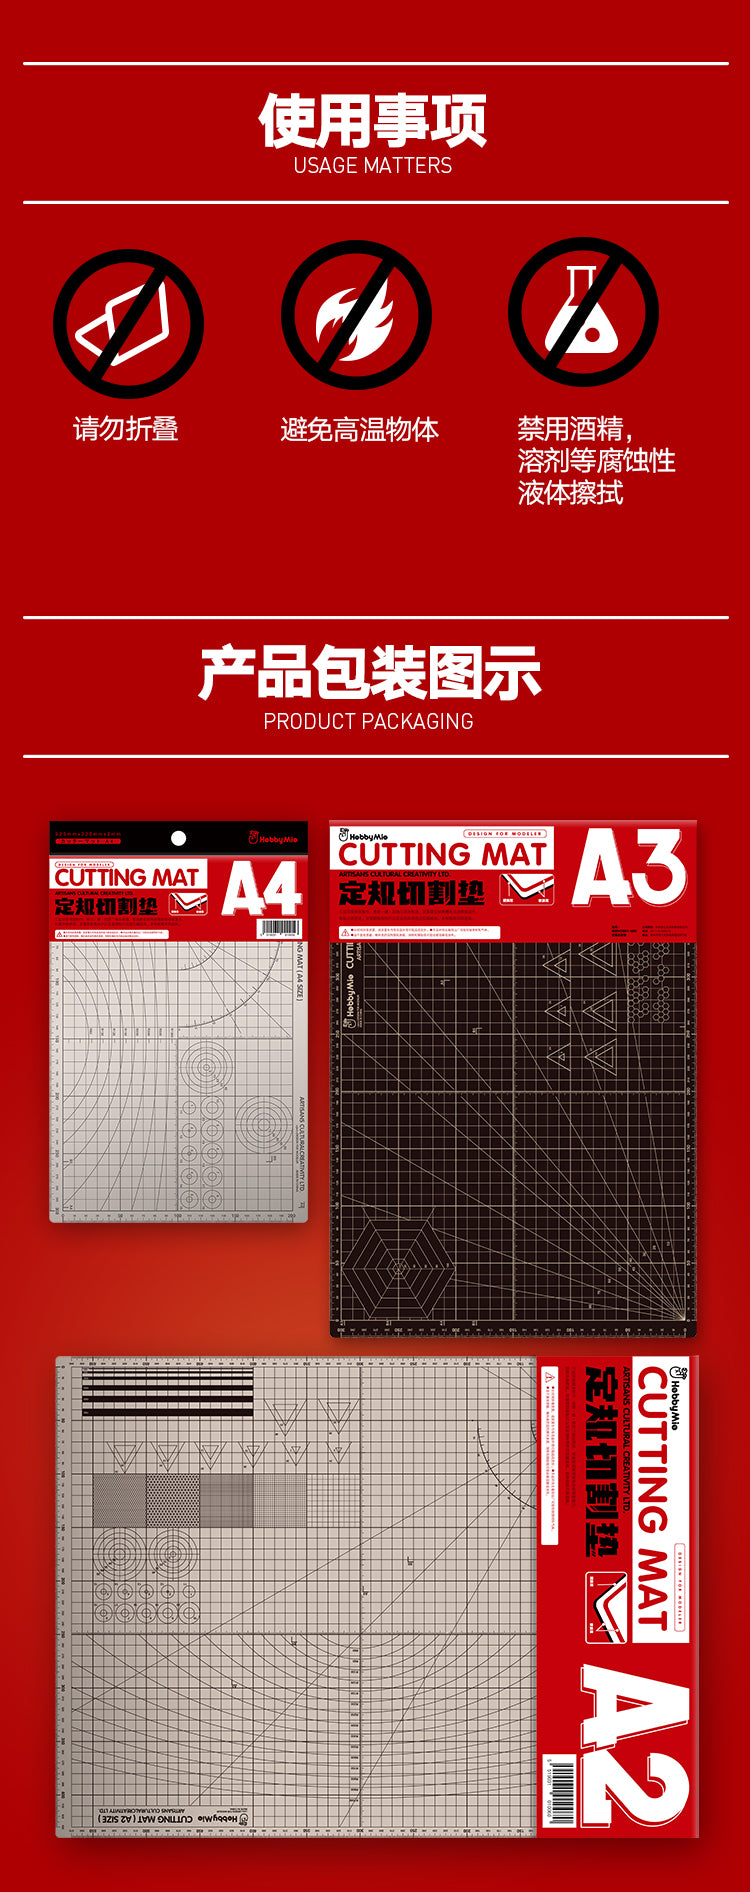 Hobby Mio Cutting Mat A2 / A3 / A4 Size